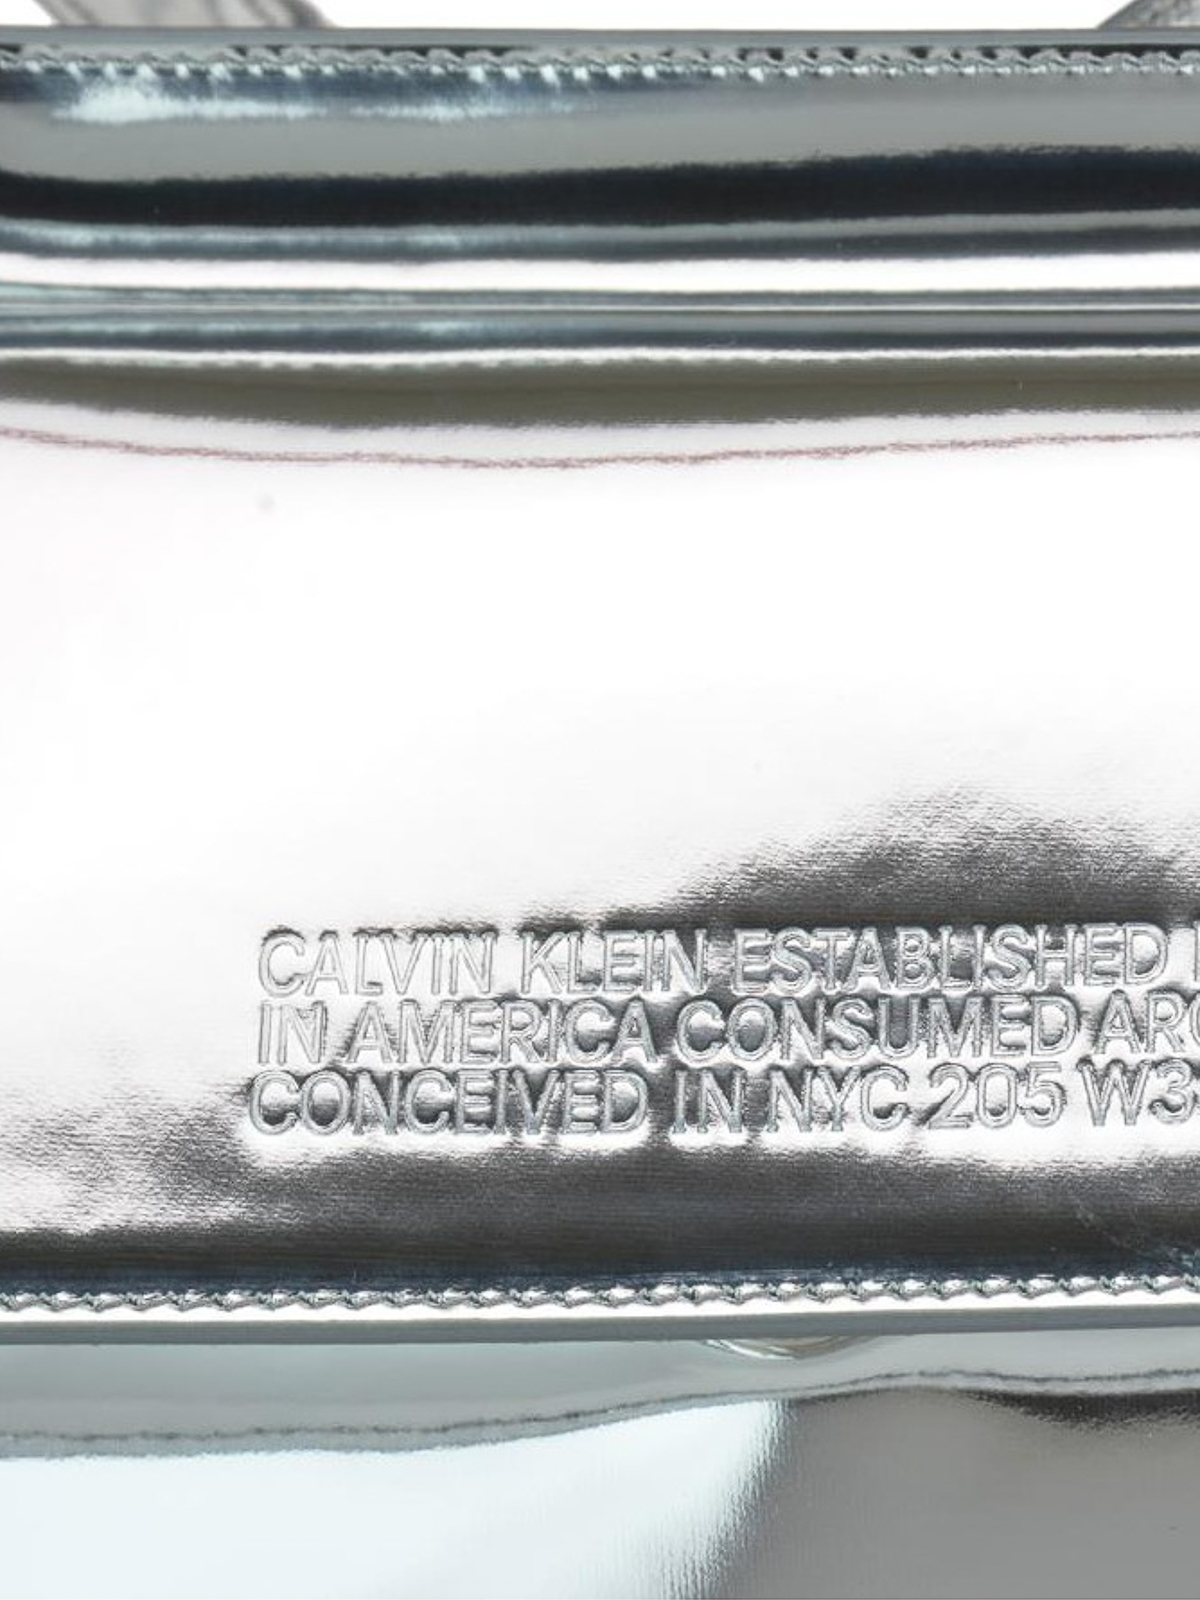 Calvin Klein Handbags Tote, Shop Online